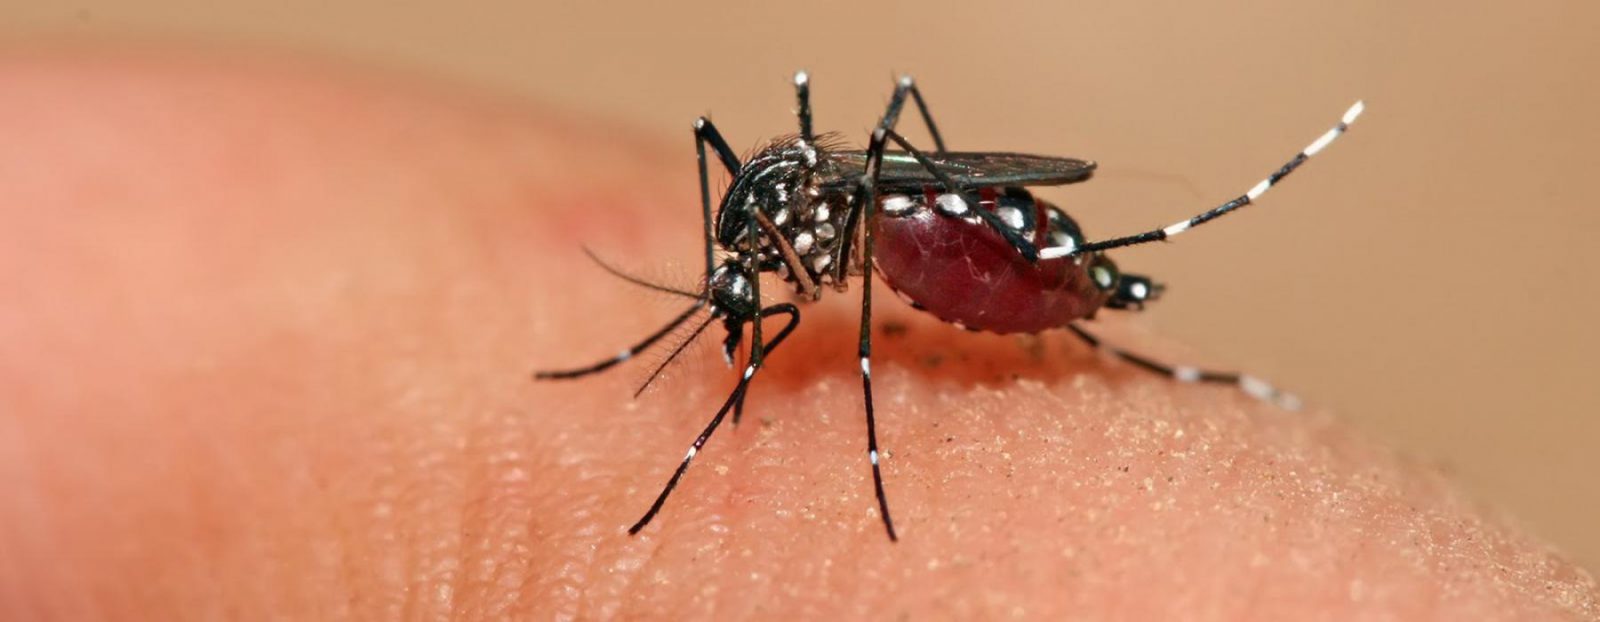 Alerta epidemiológica en Colombia por dengue